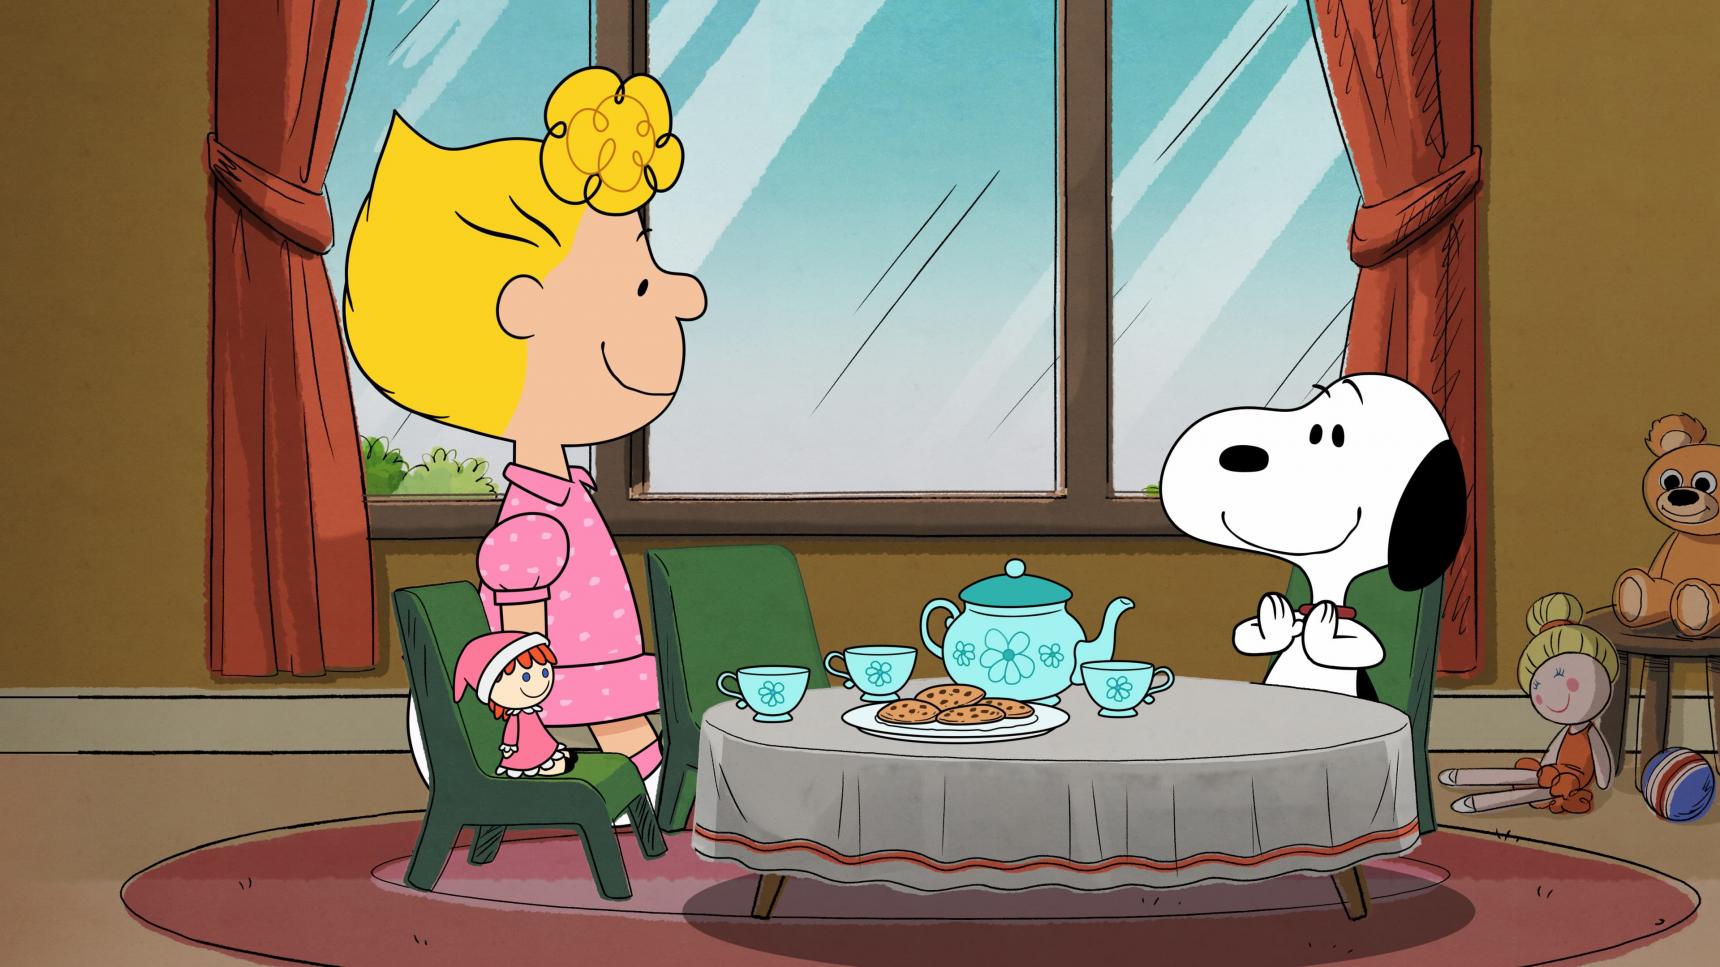 Poster del episodio 10 de El show de Snoopy online